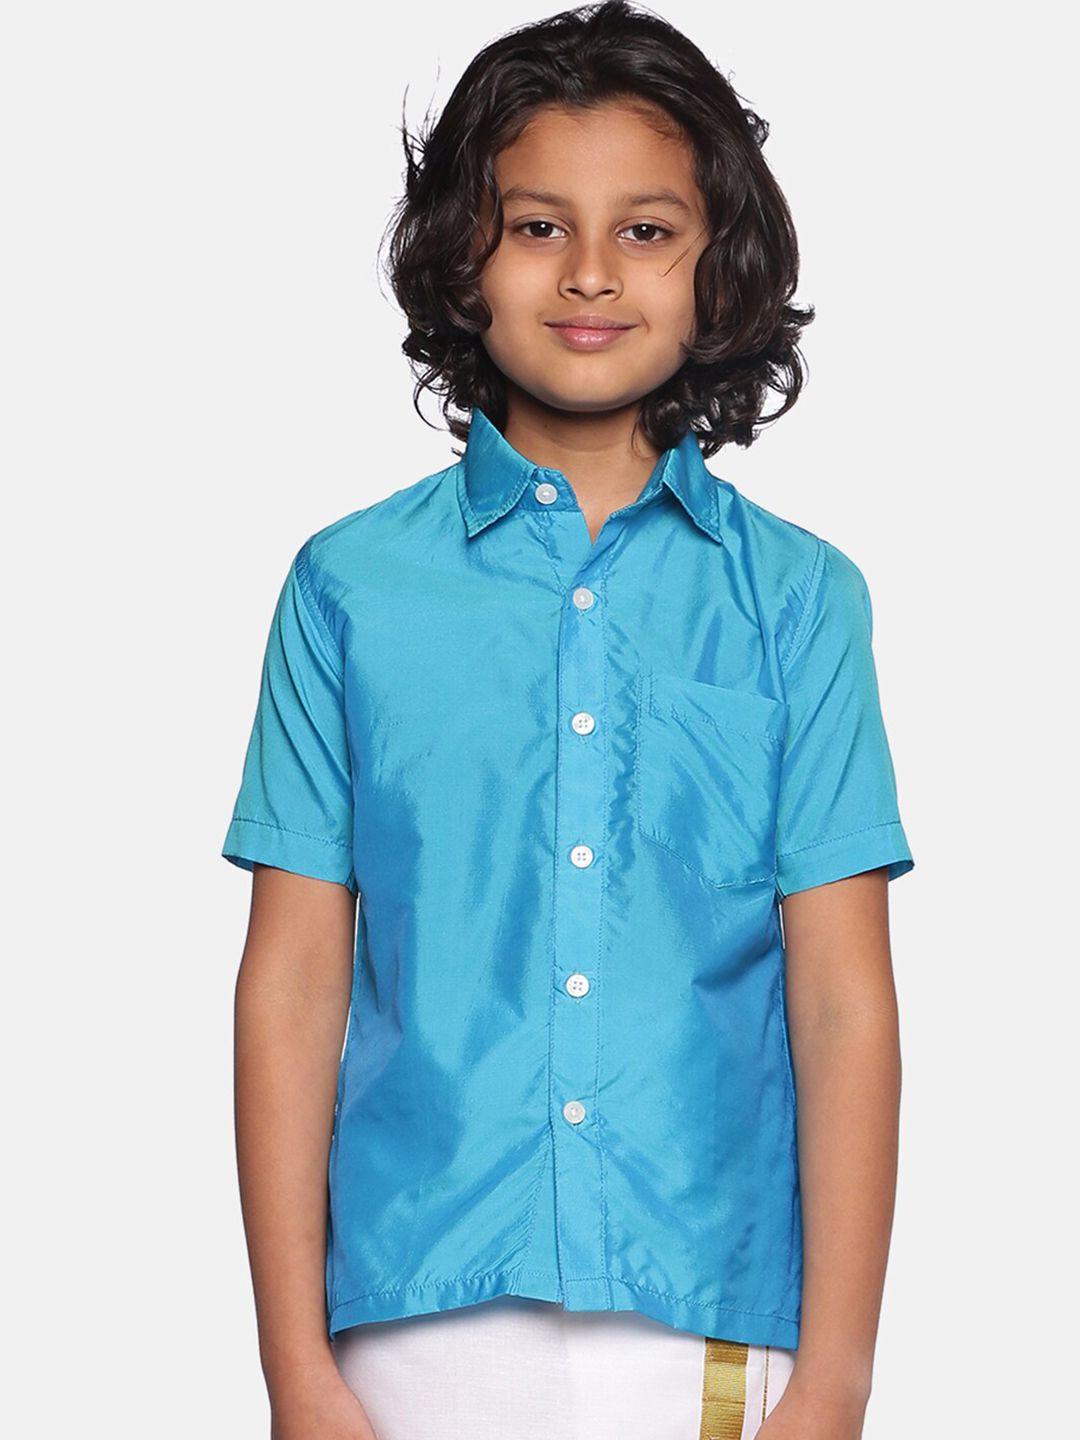 sethukrishna boys turquoise blue classic casual shirt